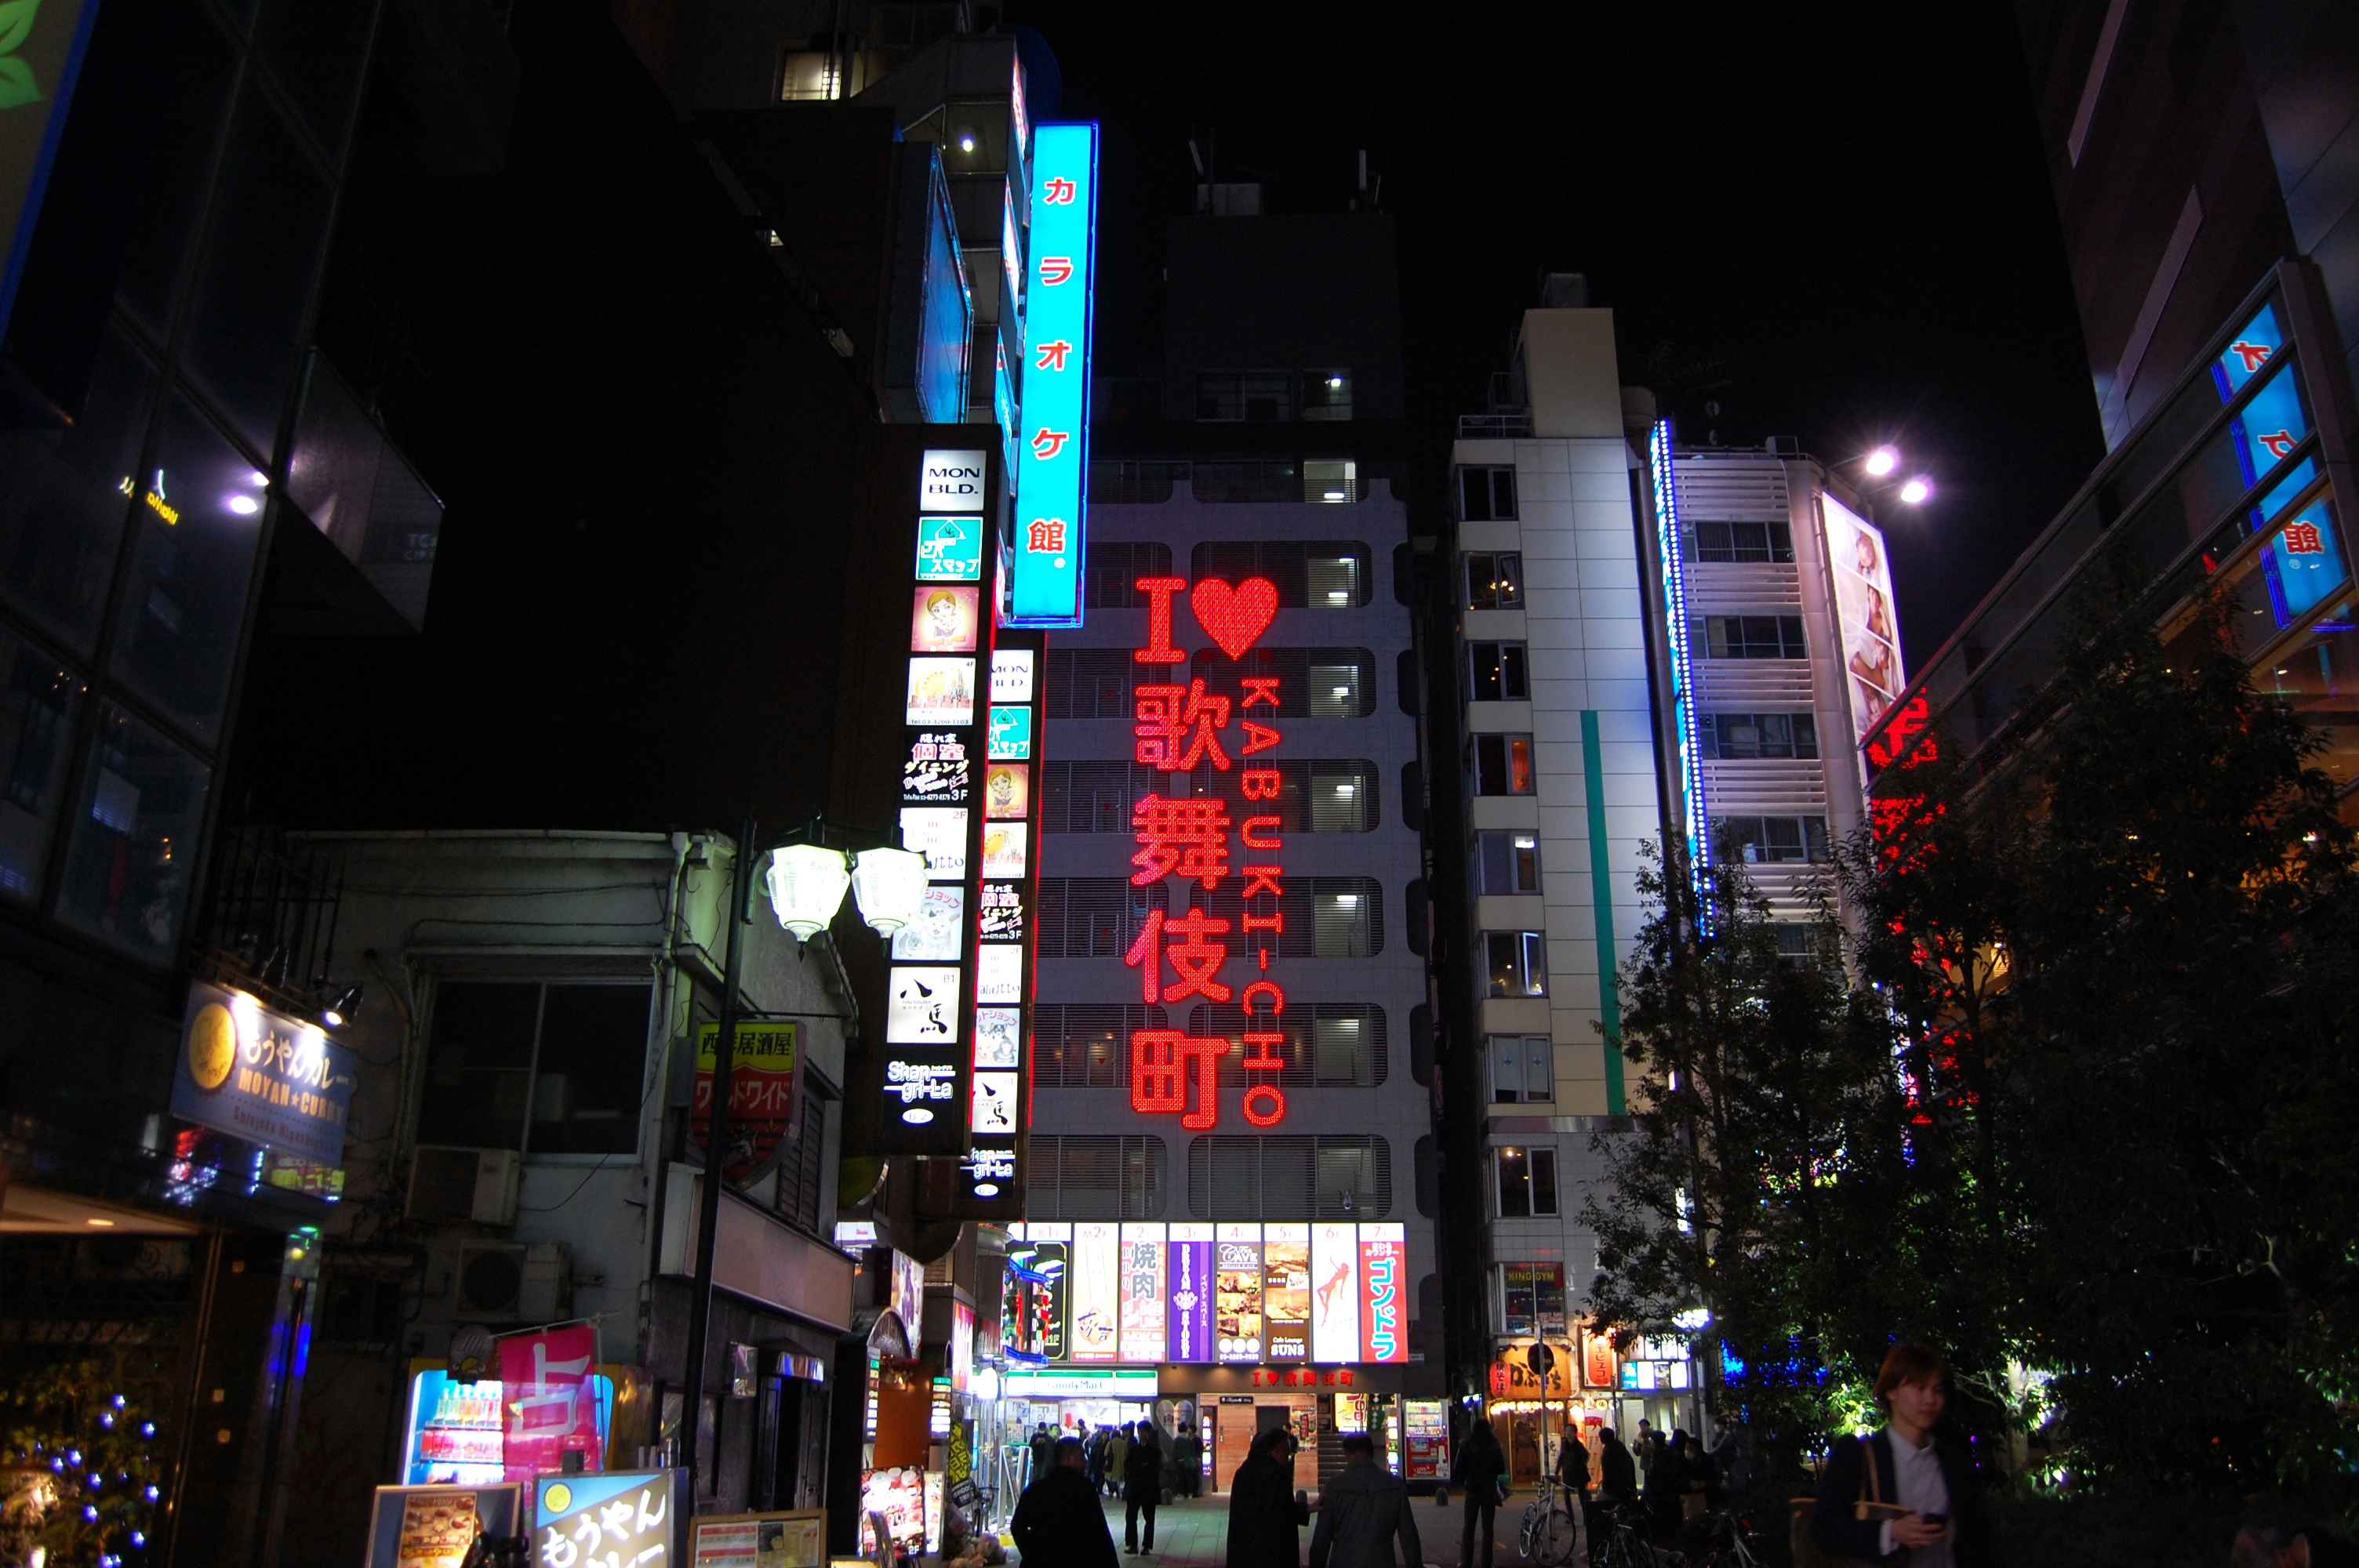 夜の歌舞伎町01 フリー素材ドットコム